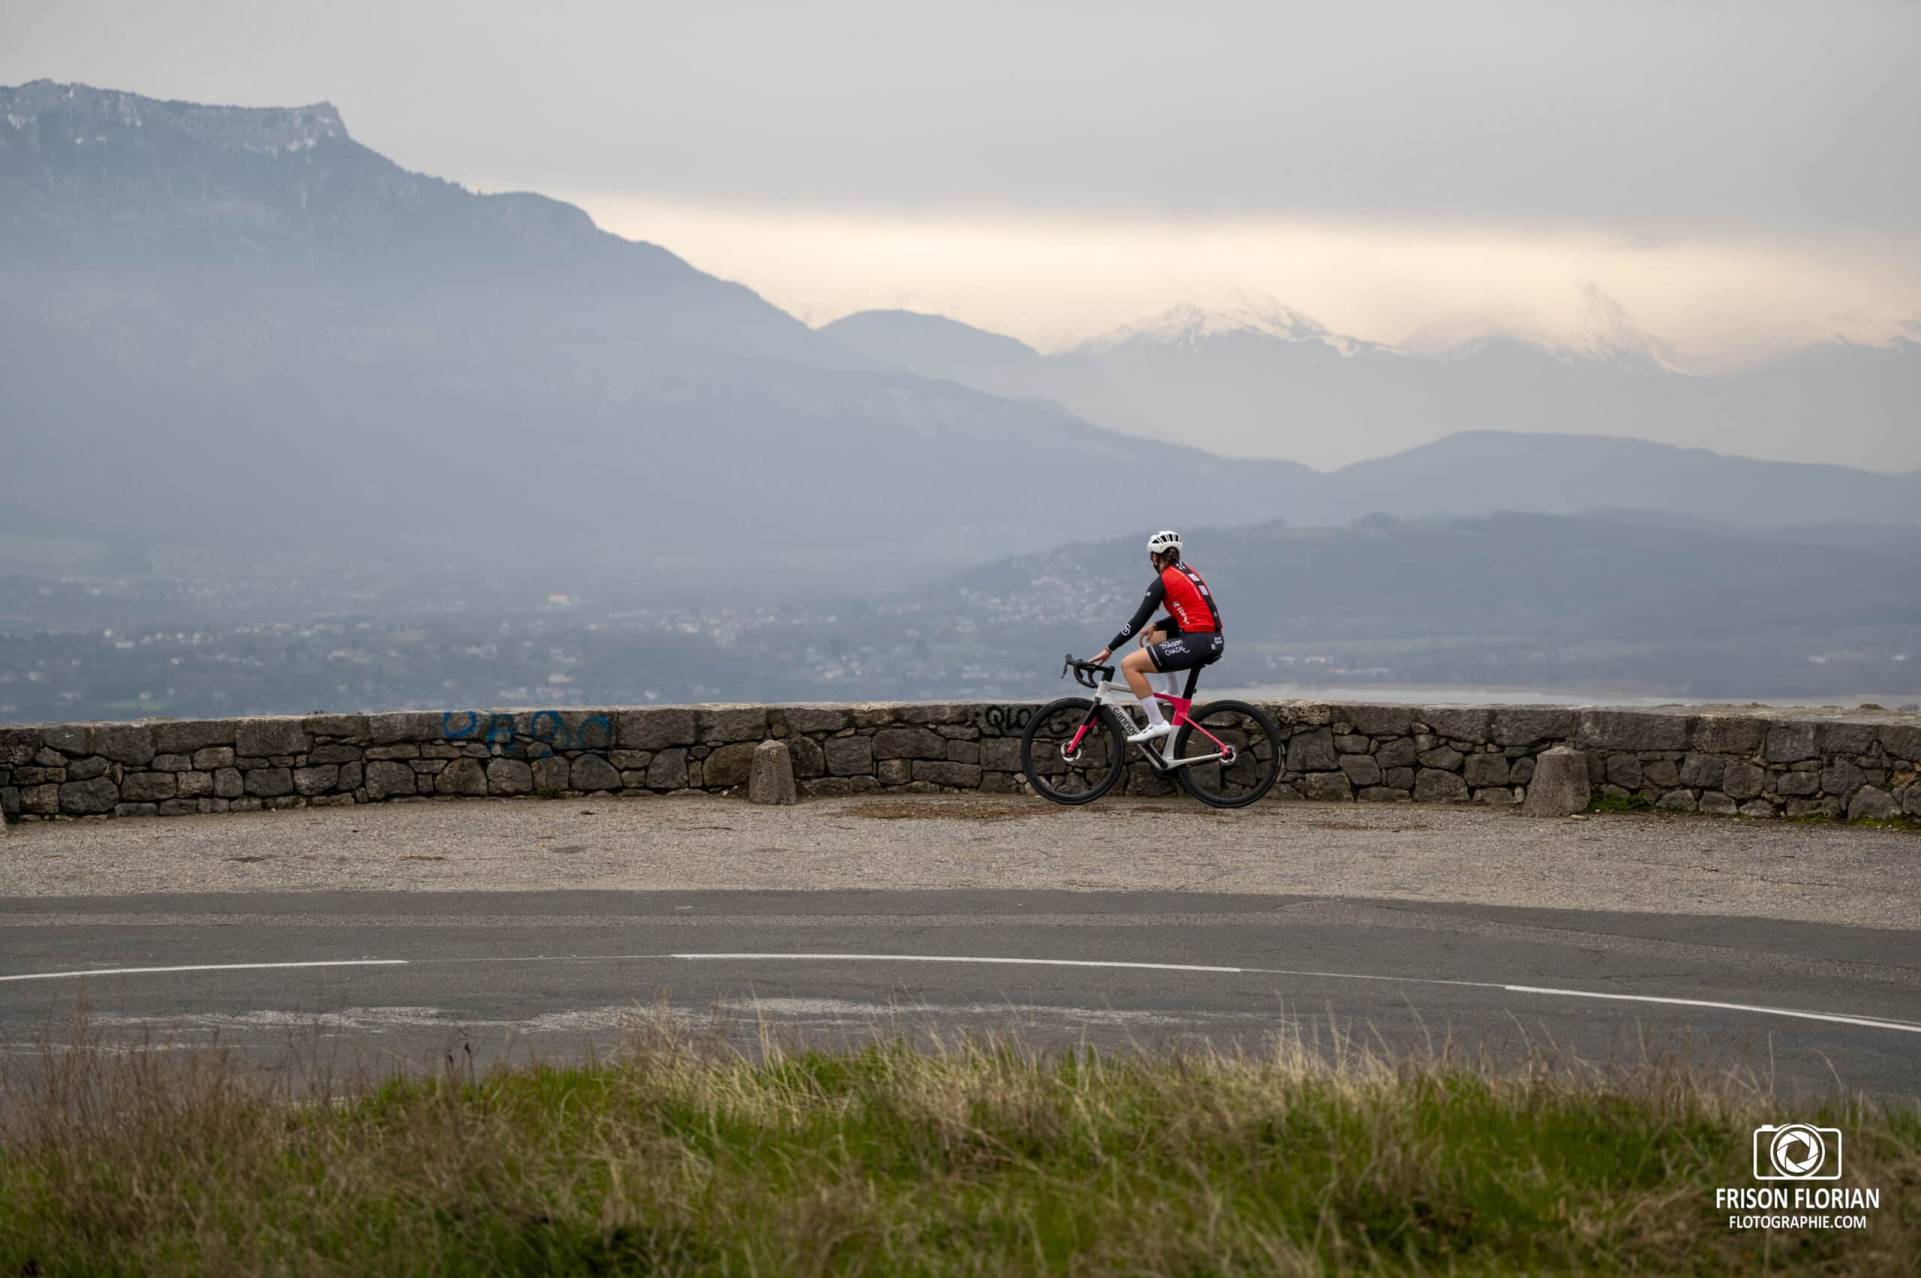 Séance photo pour le nouveau vélo Cannondale de la DN féminine du Chambéry Cyclisme Compétition.